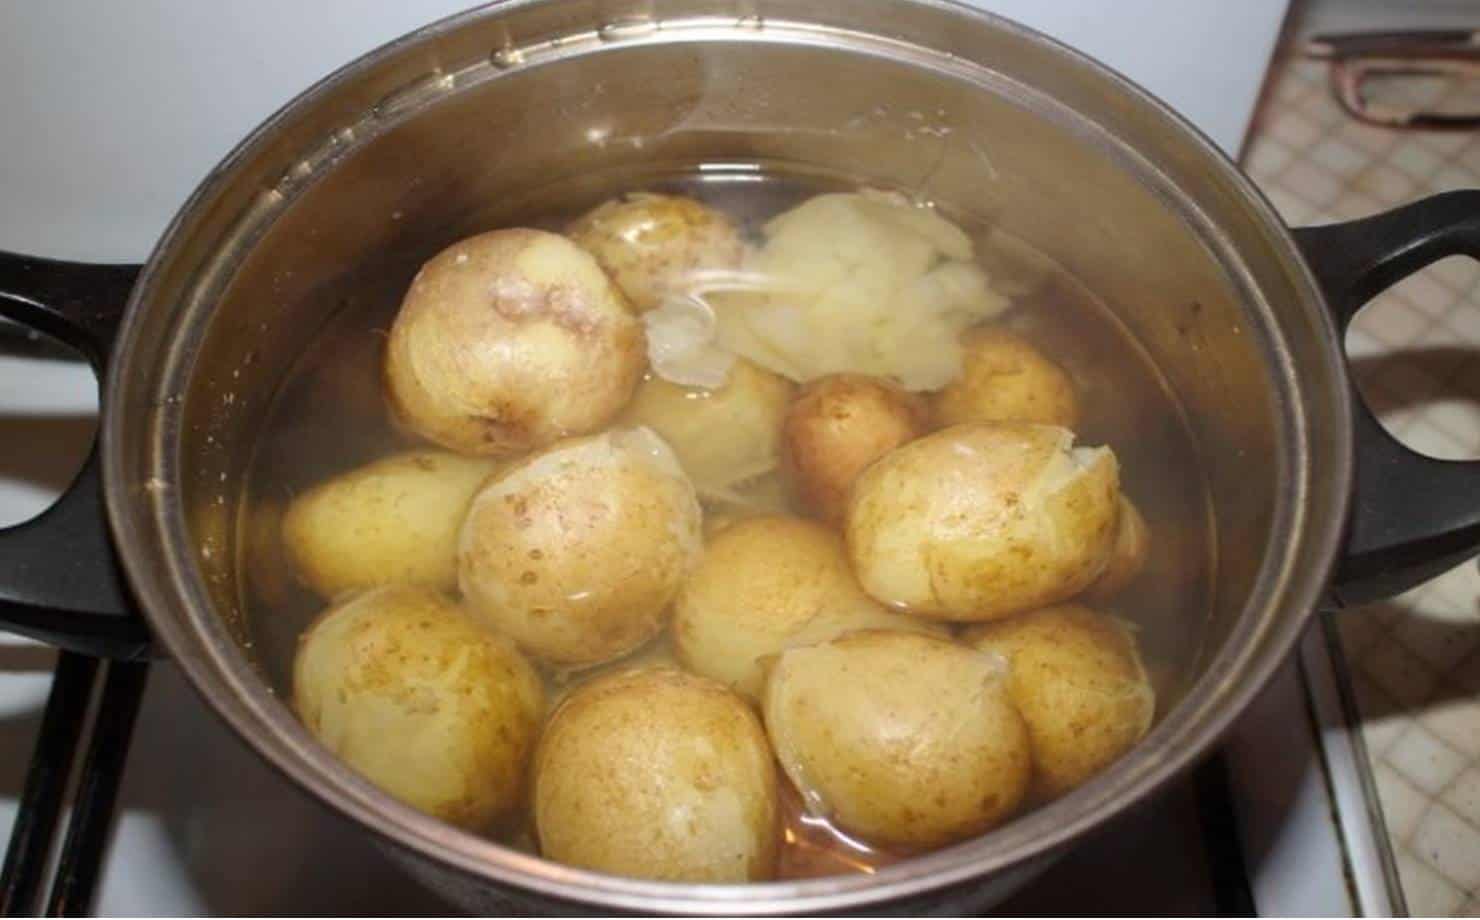 Saiba como é fácil fazer o cozimento de suas batatas com dicas simples que te ajudara a obter as melhores batatas cozidas